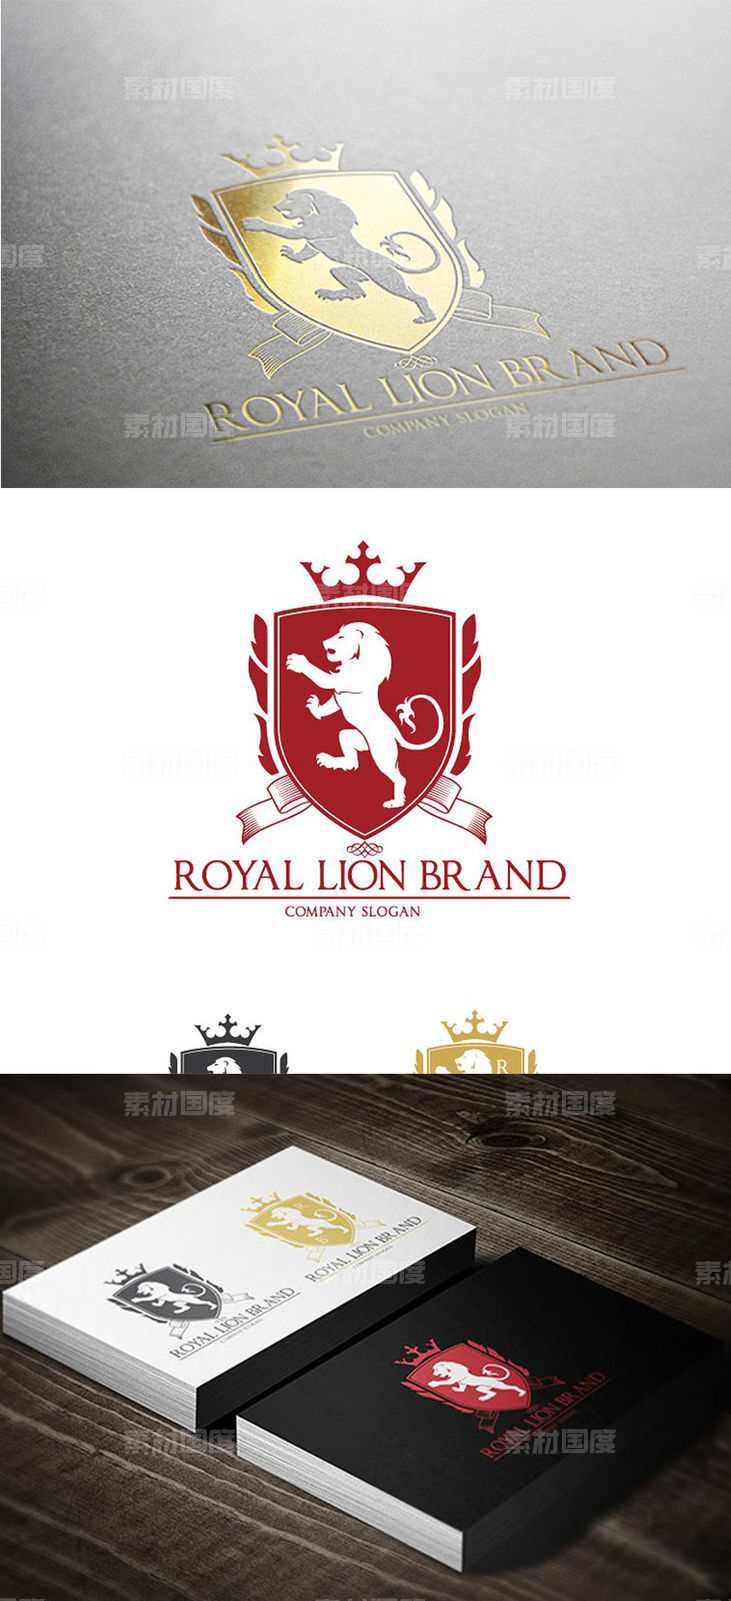 奢华风格金箔狮子图形Logo设计 Royal Lion Brand